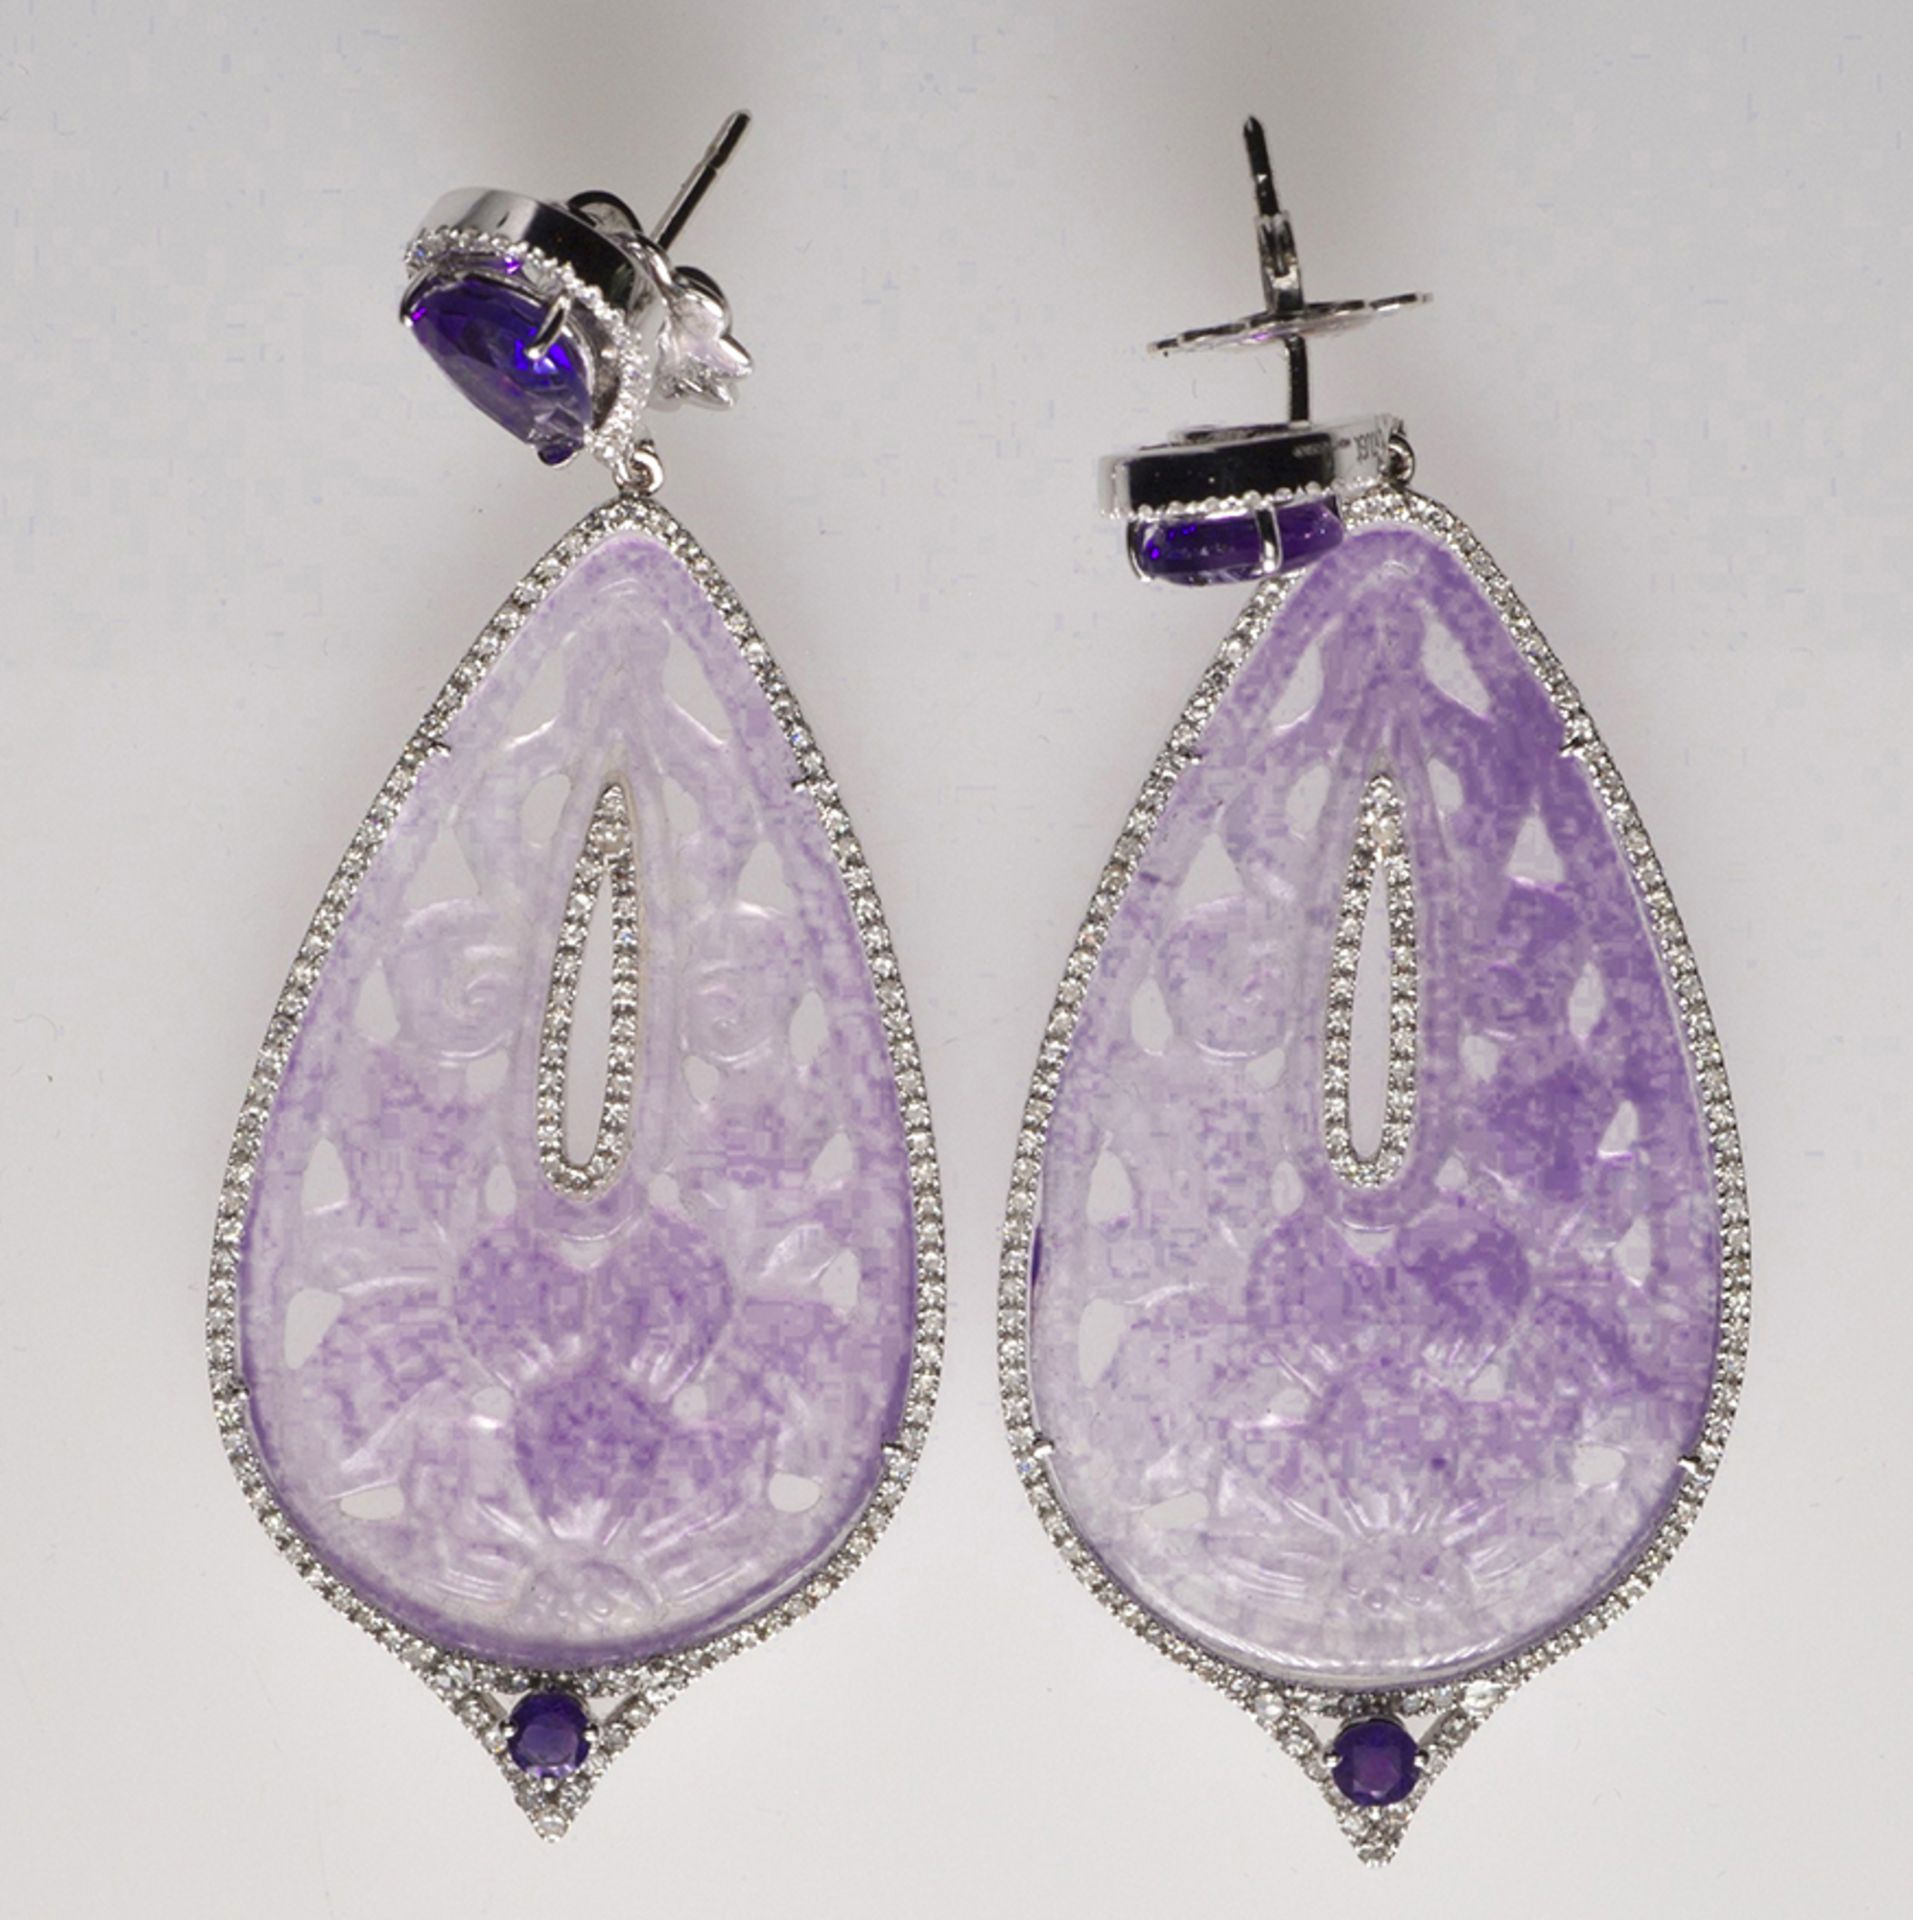 Pair of earrings - Lavender jade earrings. Set with diamonds and amethyst -